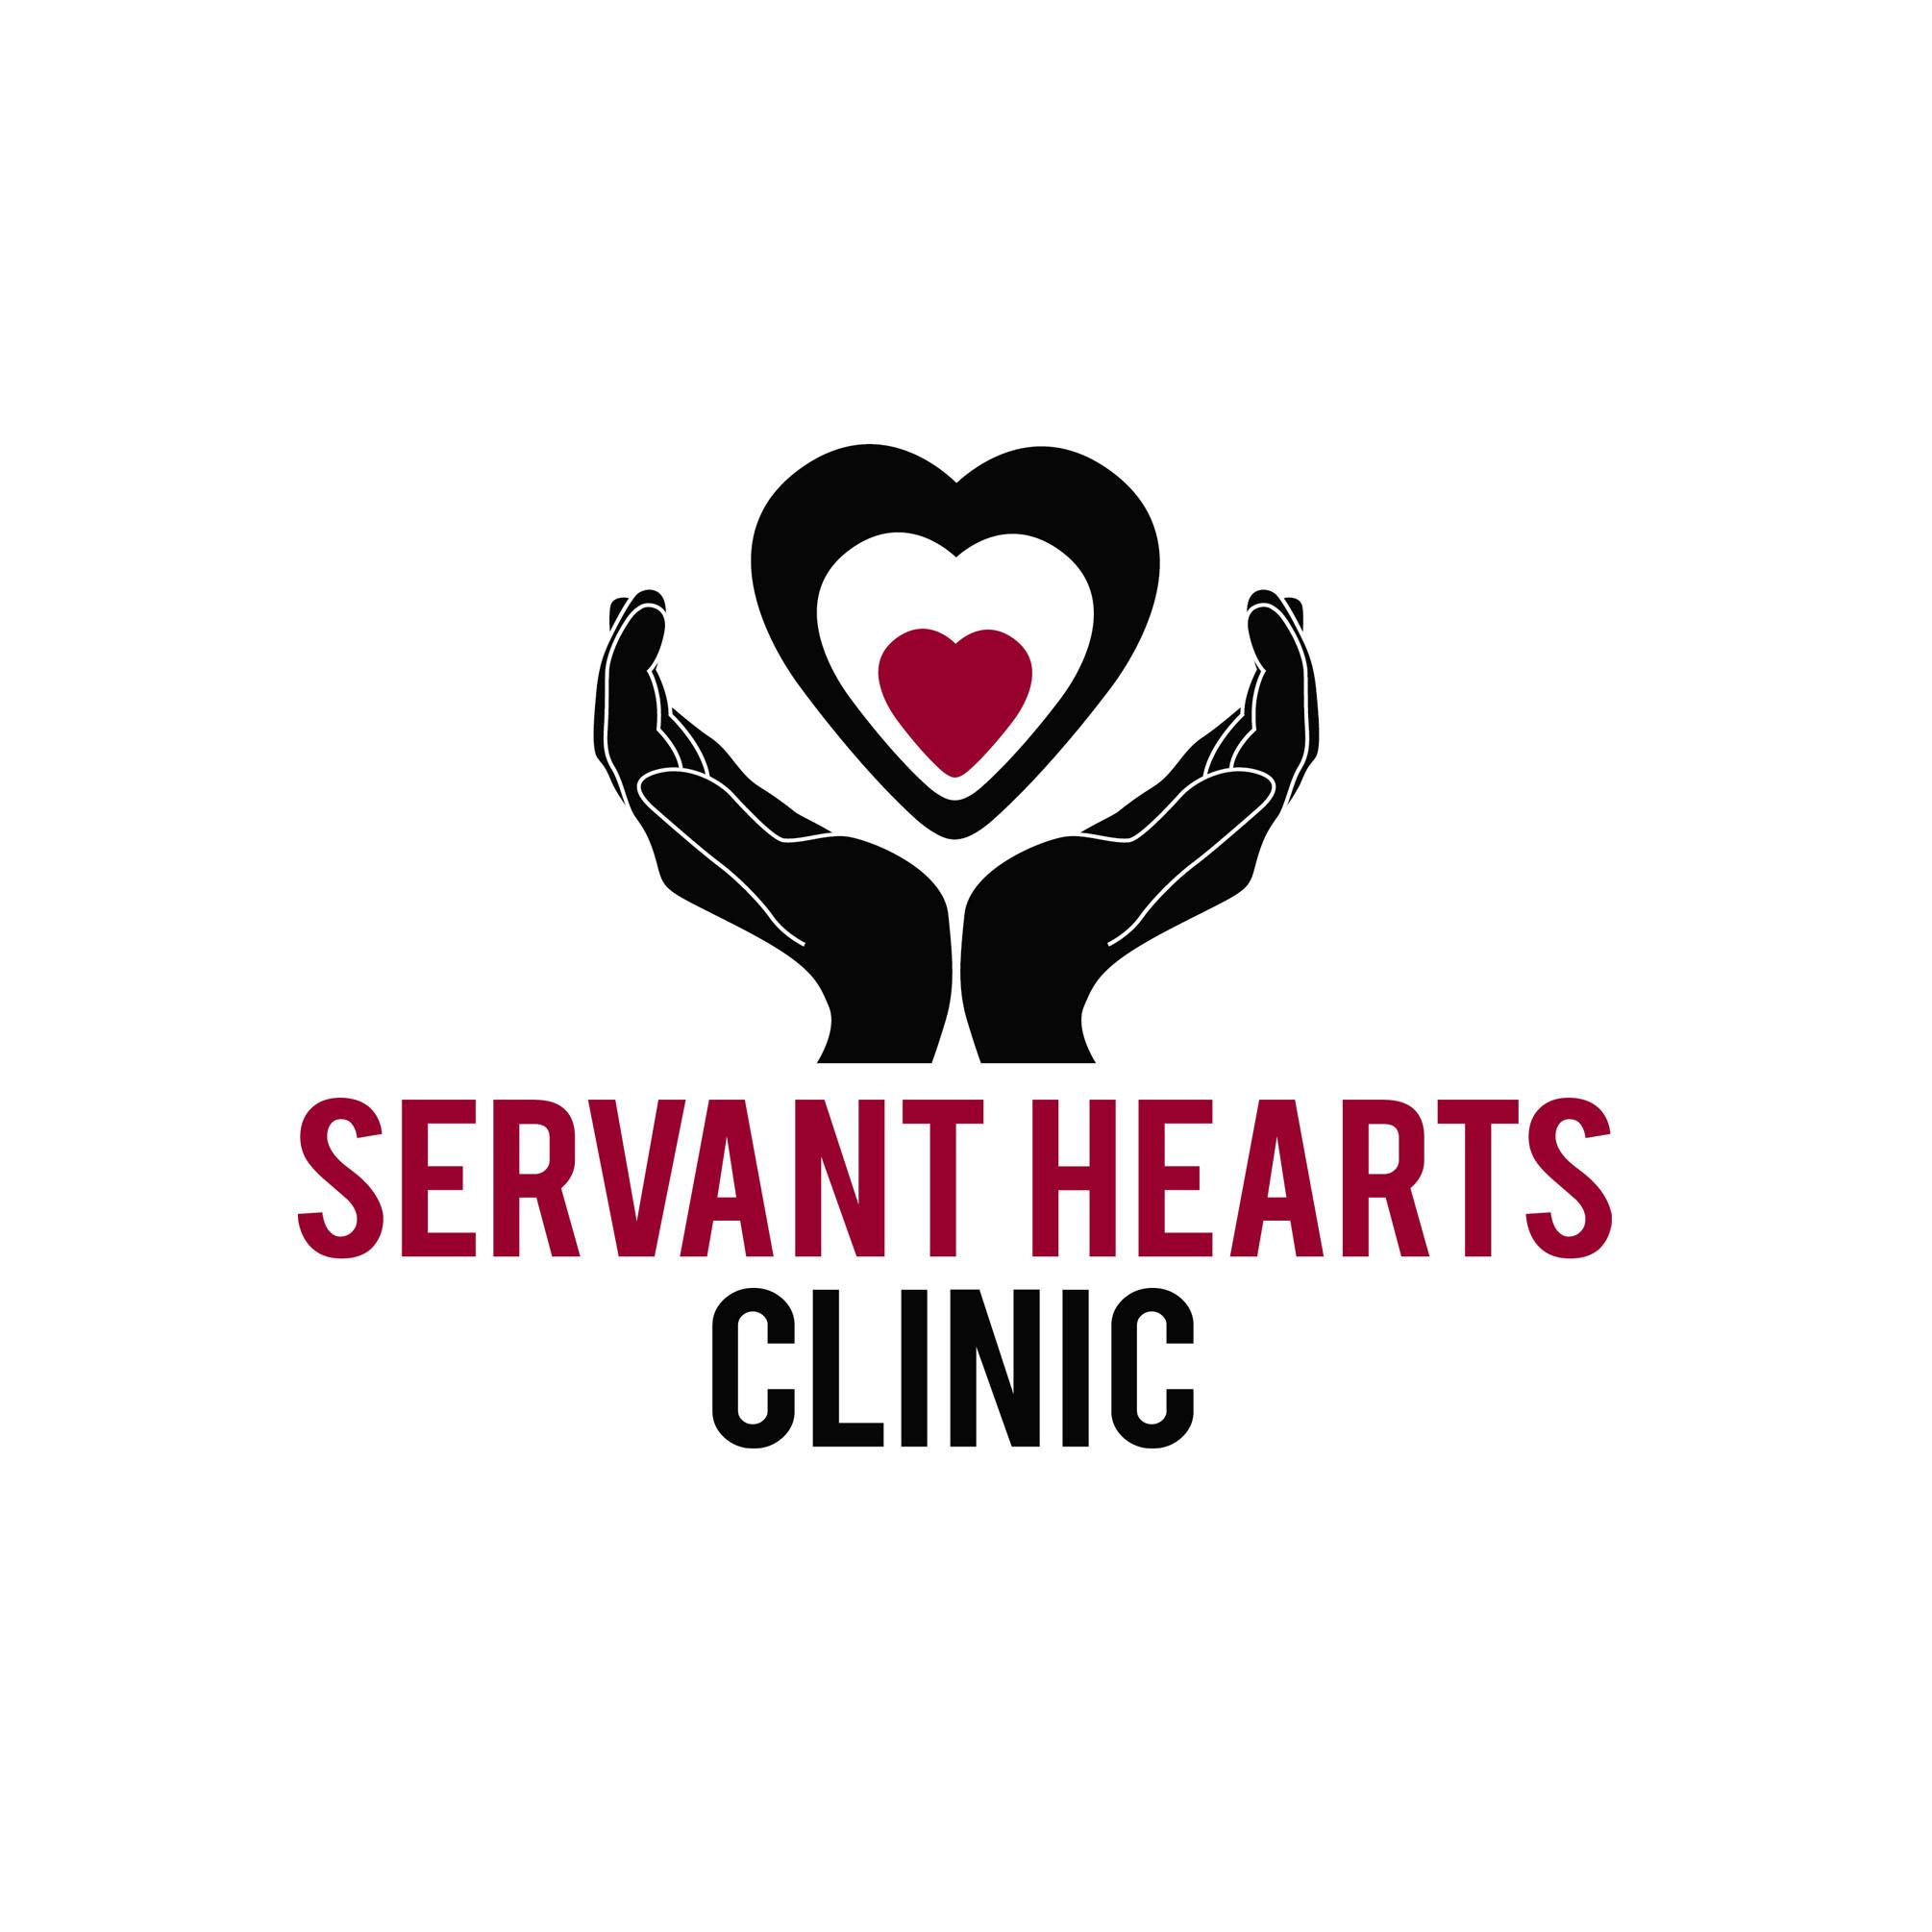 Servant Hearts Clinic